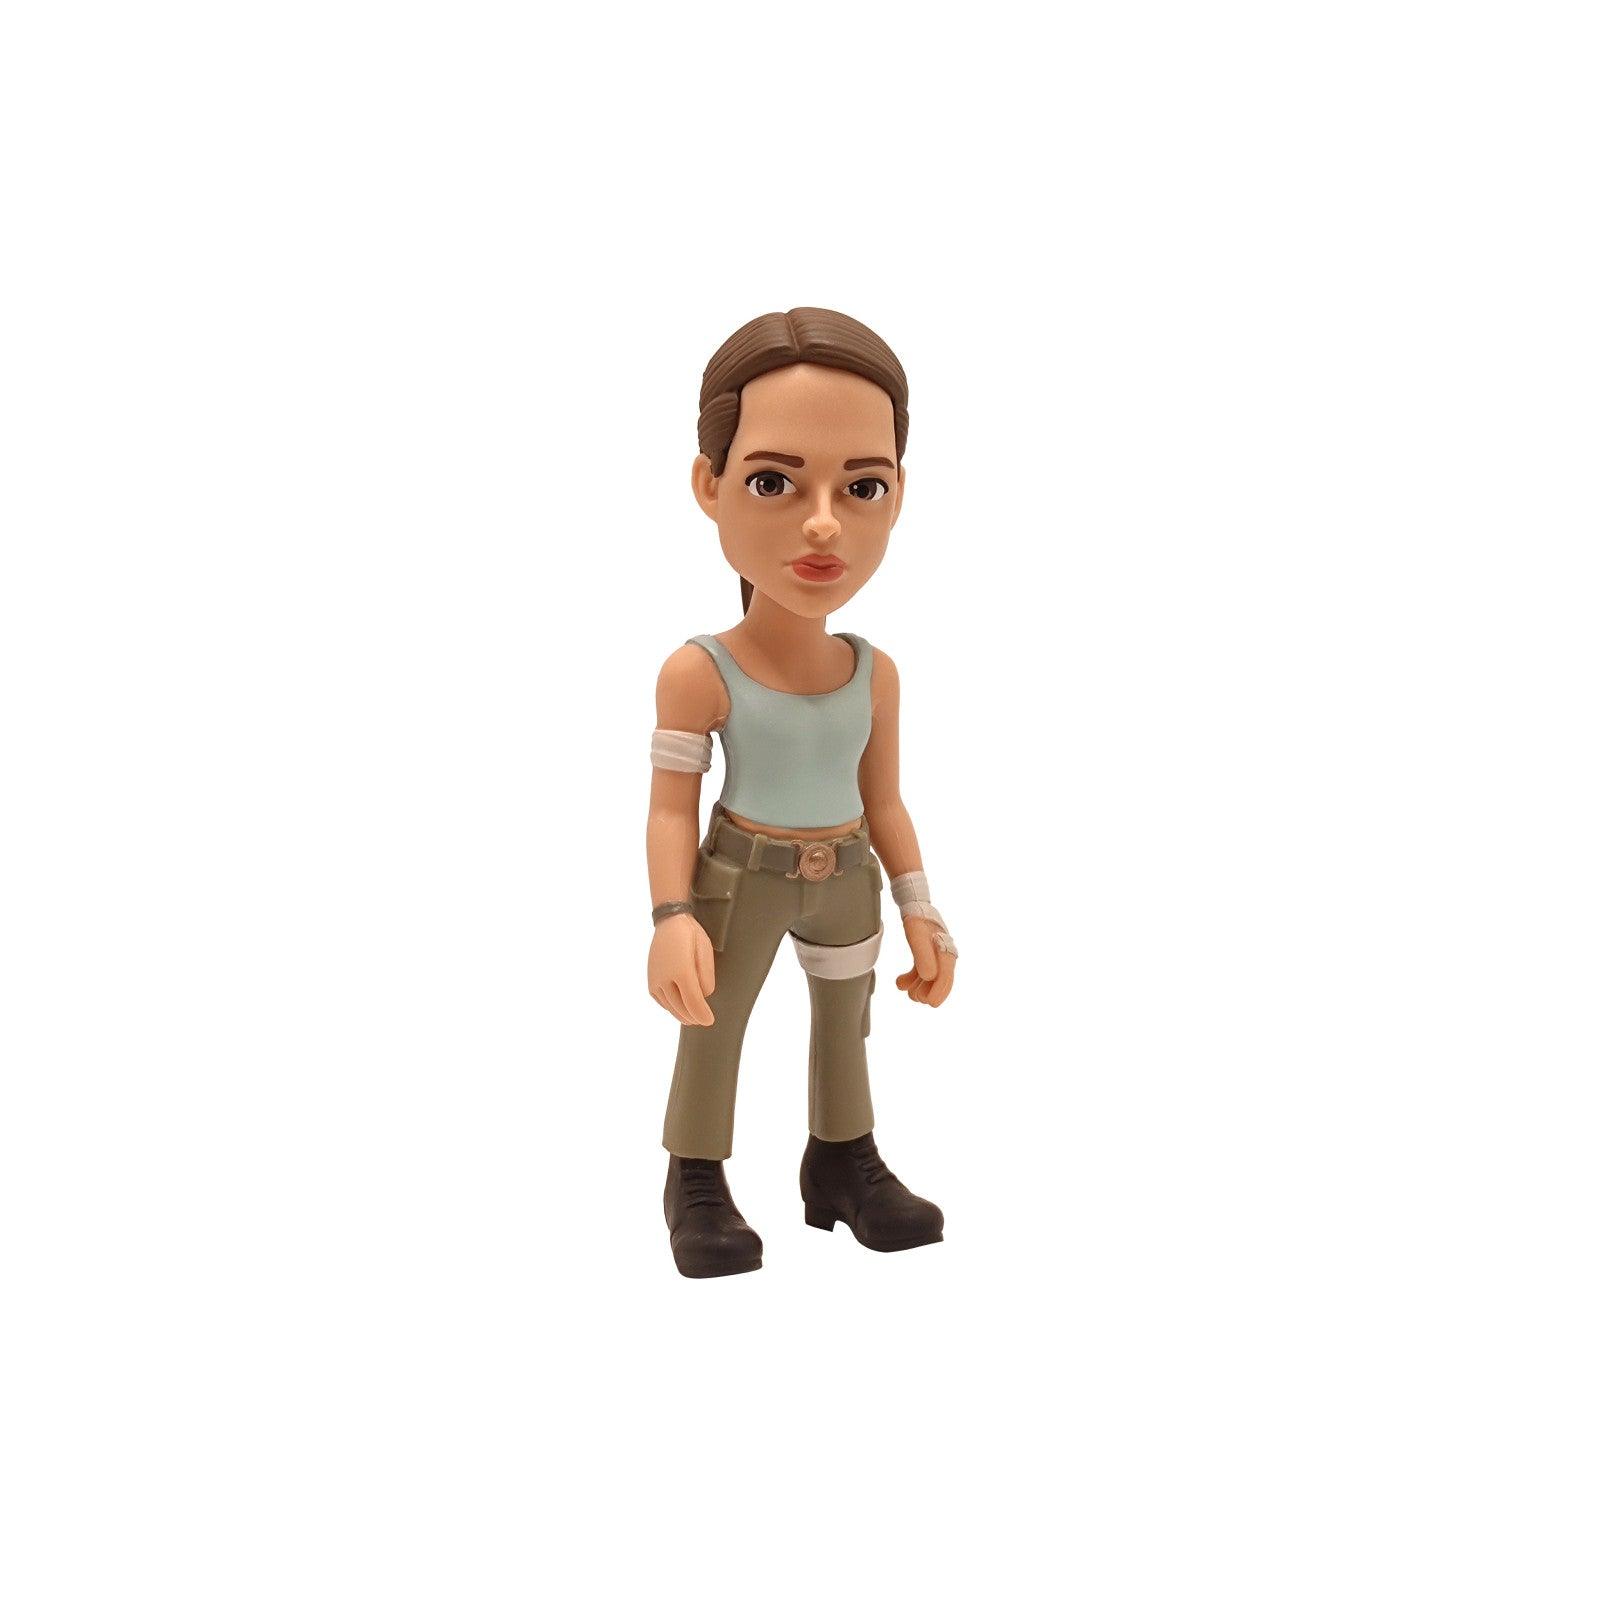 VR-105937 MINIX Tomb Raider Lara Croft - MINIX - Titan Pop Culture